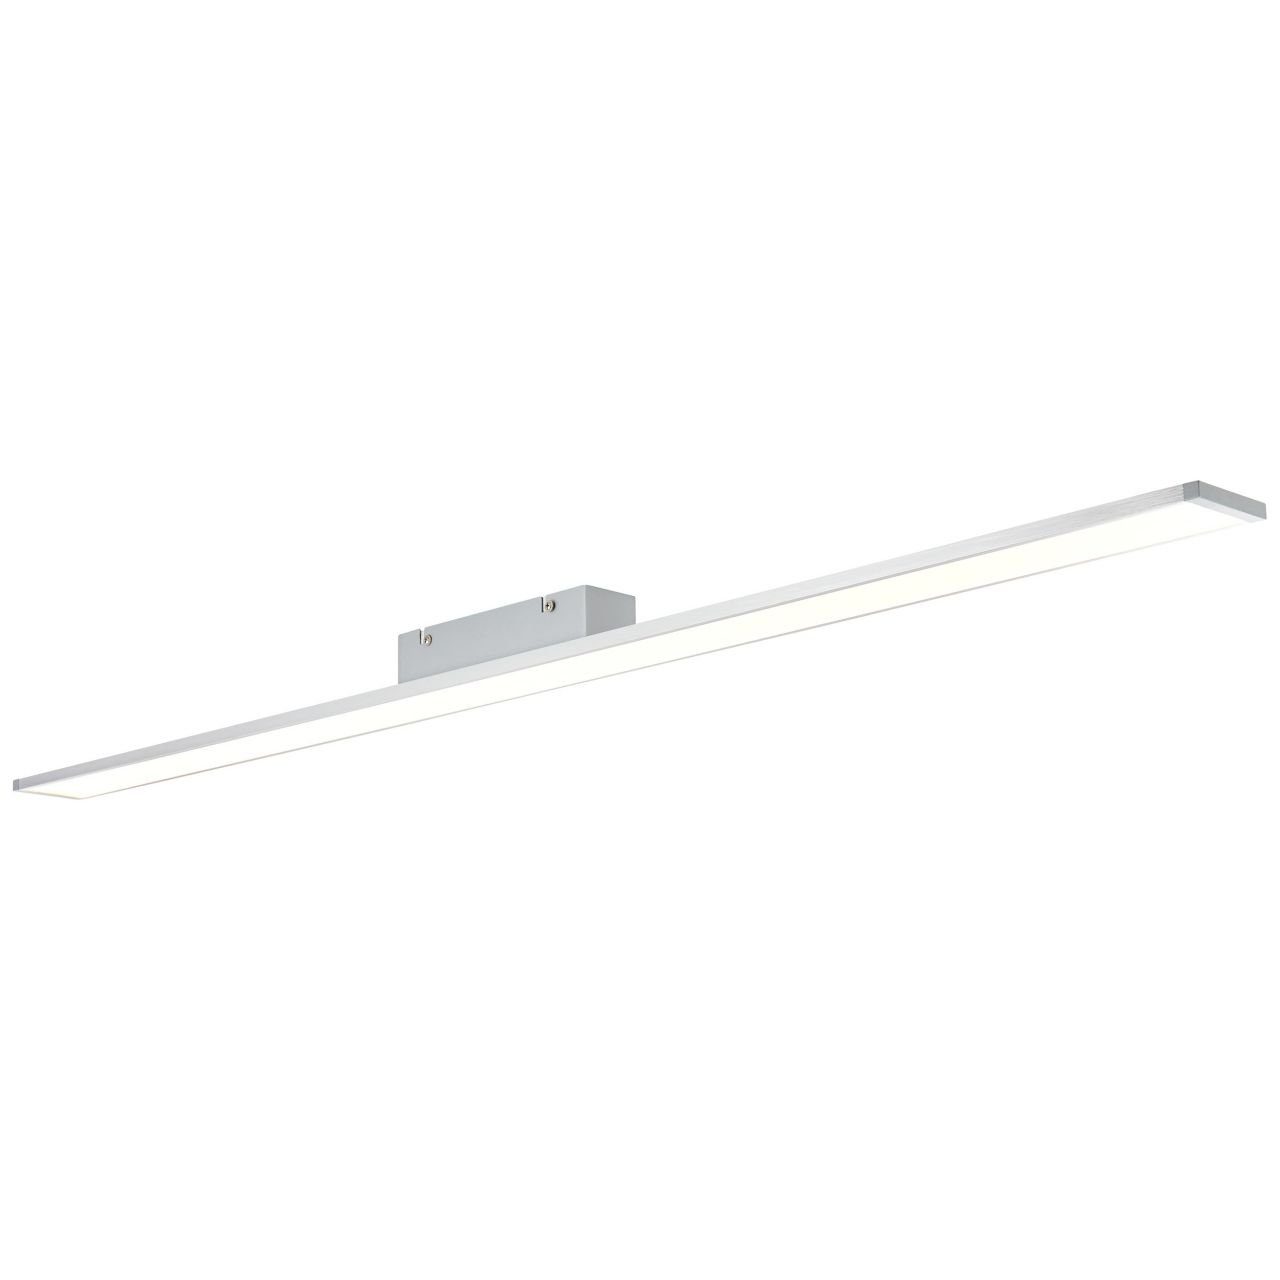 Brilliant 2 Lampe easyDim 1x 120x7cm Deckenaufbau-Paneel alu/weiß LED Entrance Entrance, Aufbauleuchte